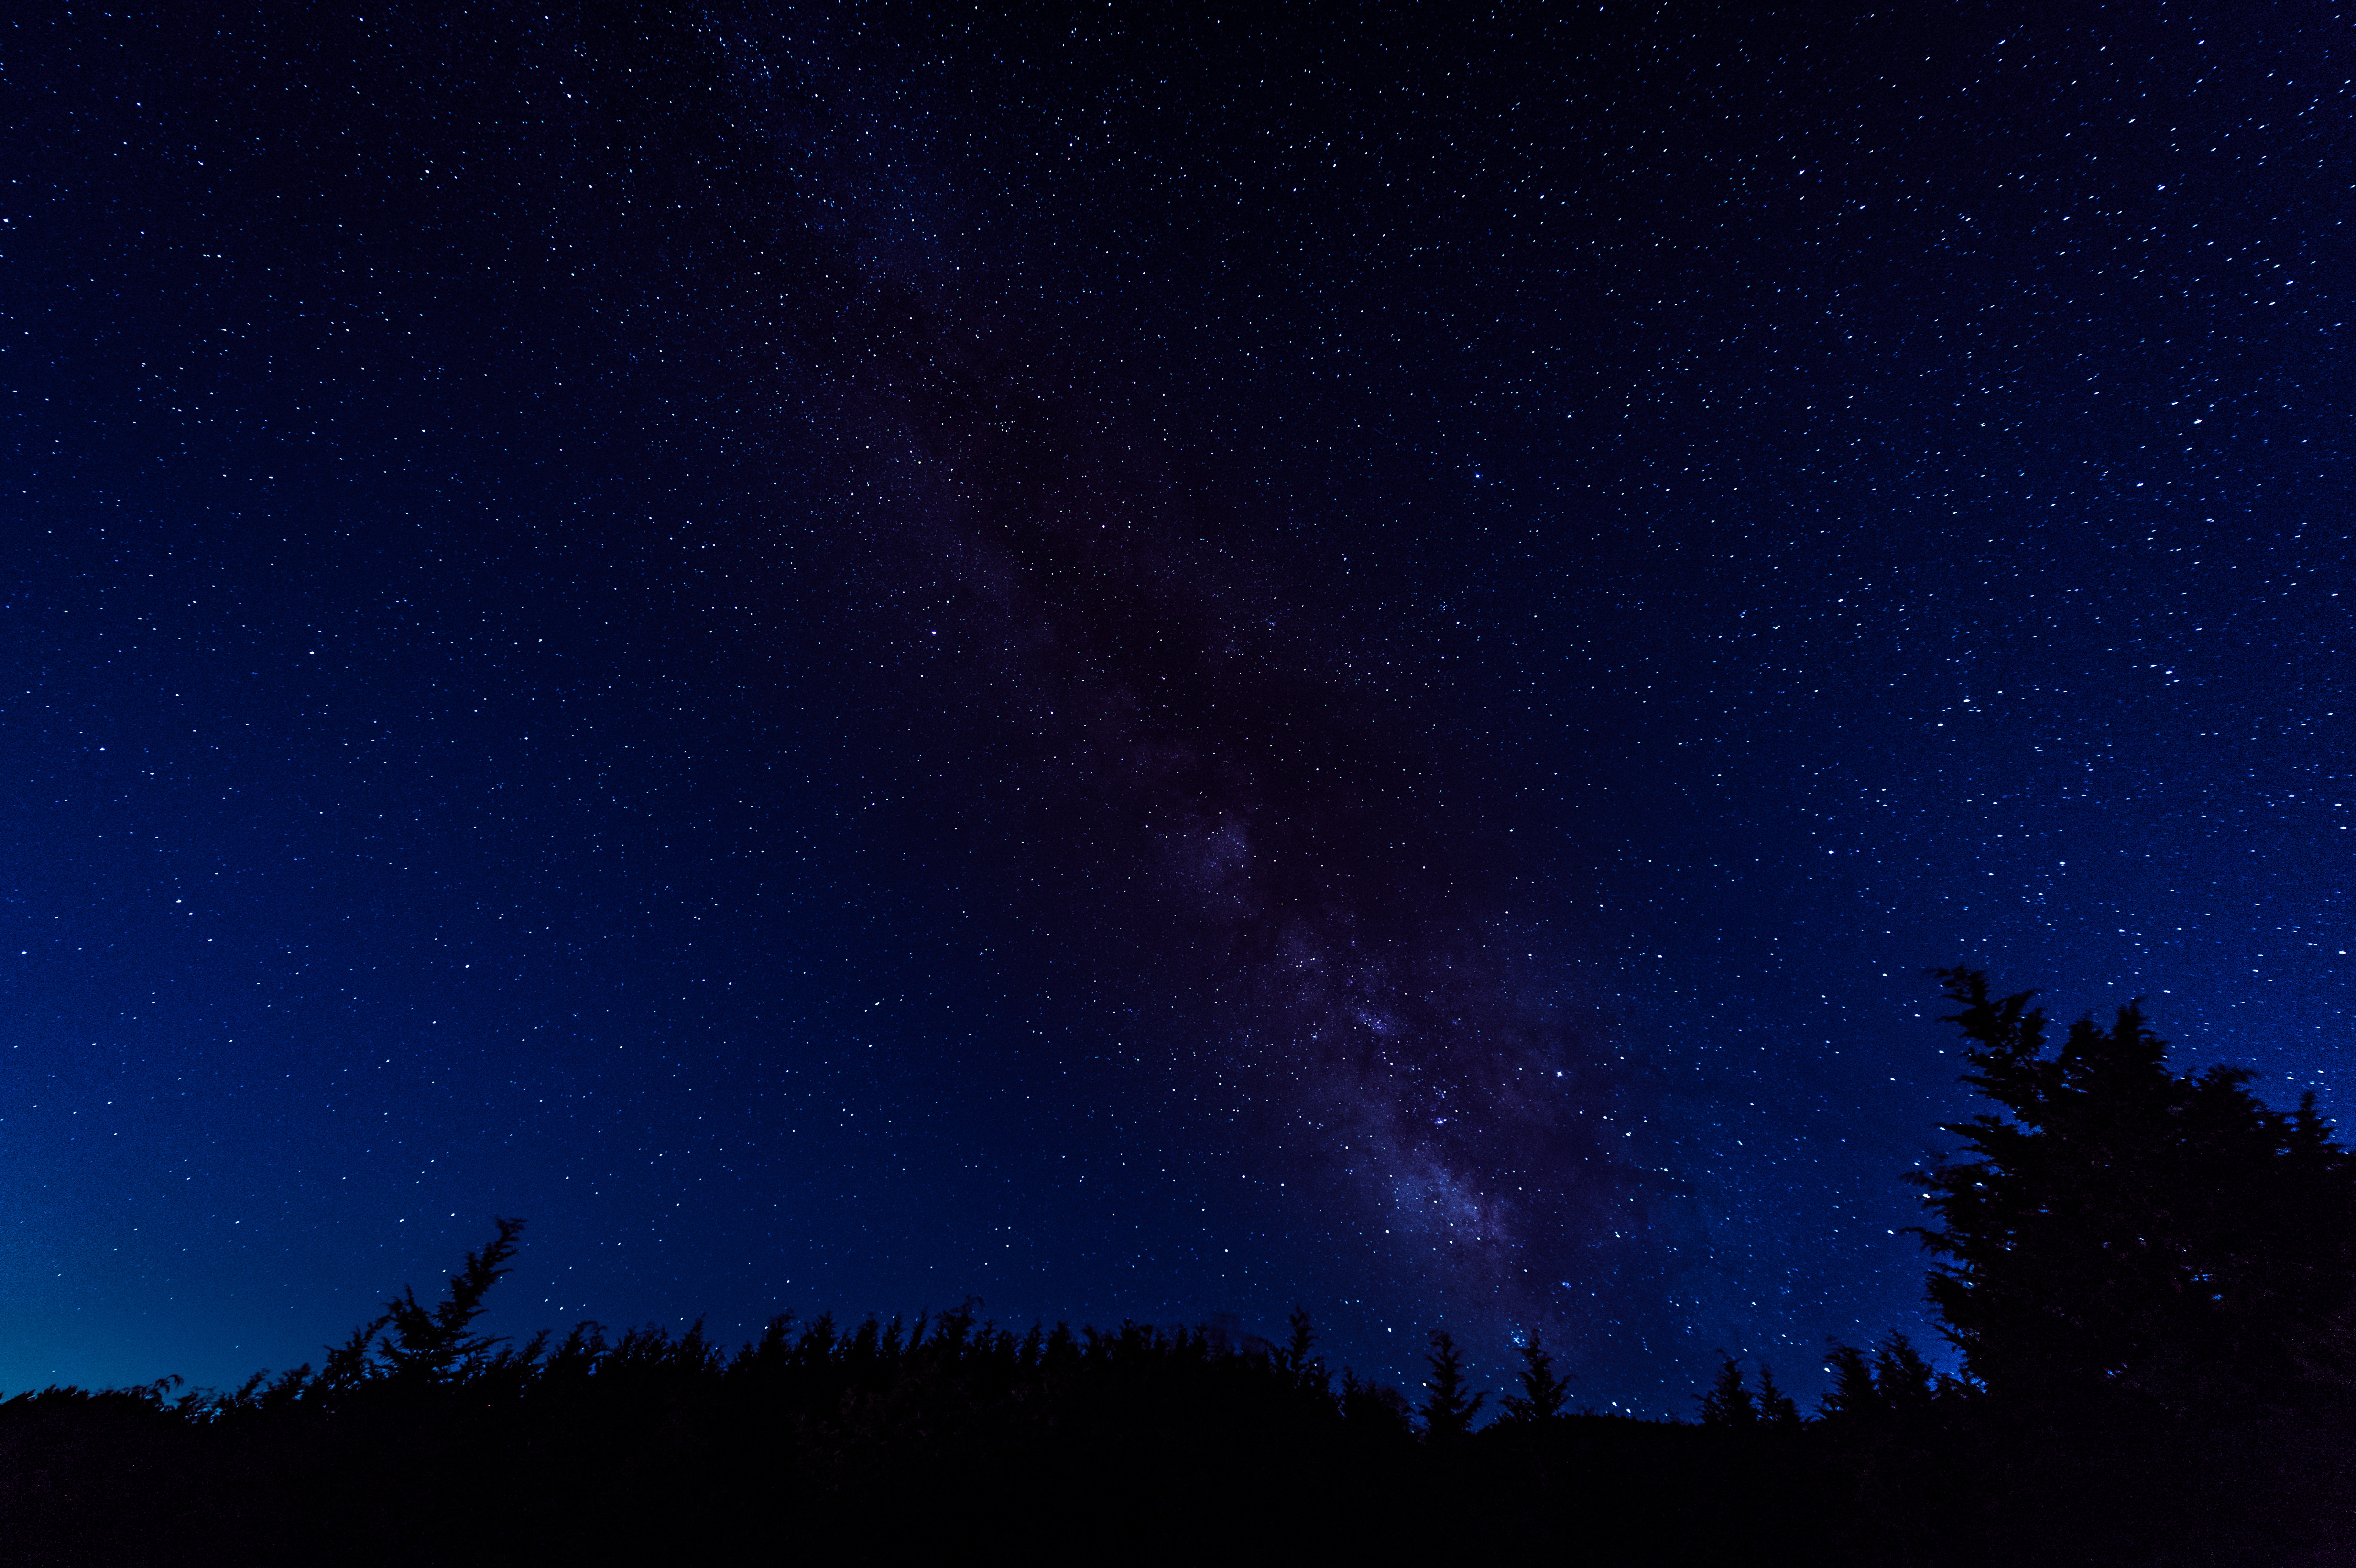 夜空いっぱいの星空 鏡野町笠菅峠 の写真 画像 を無料ダウンロード フリー素材のぱくたそ